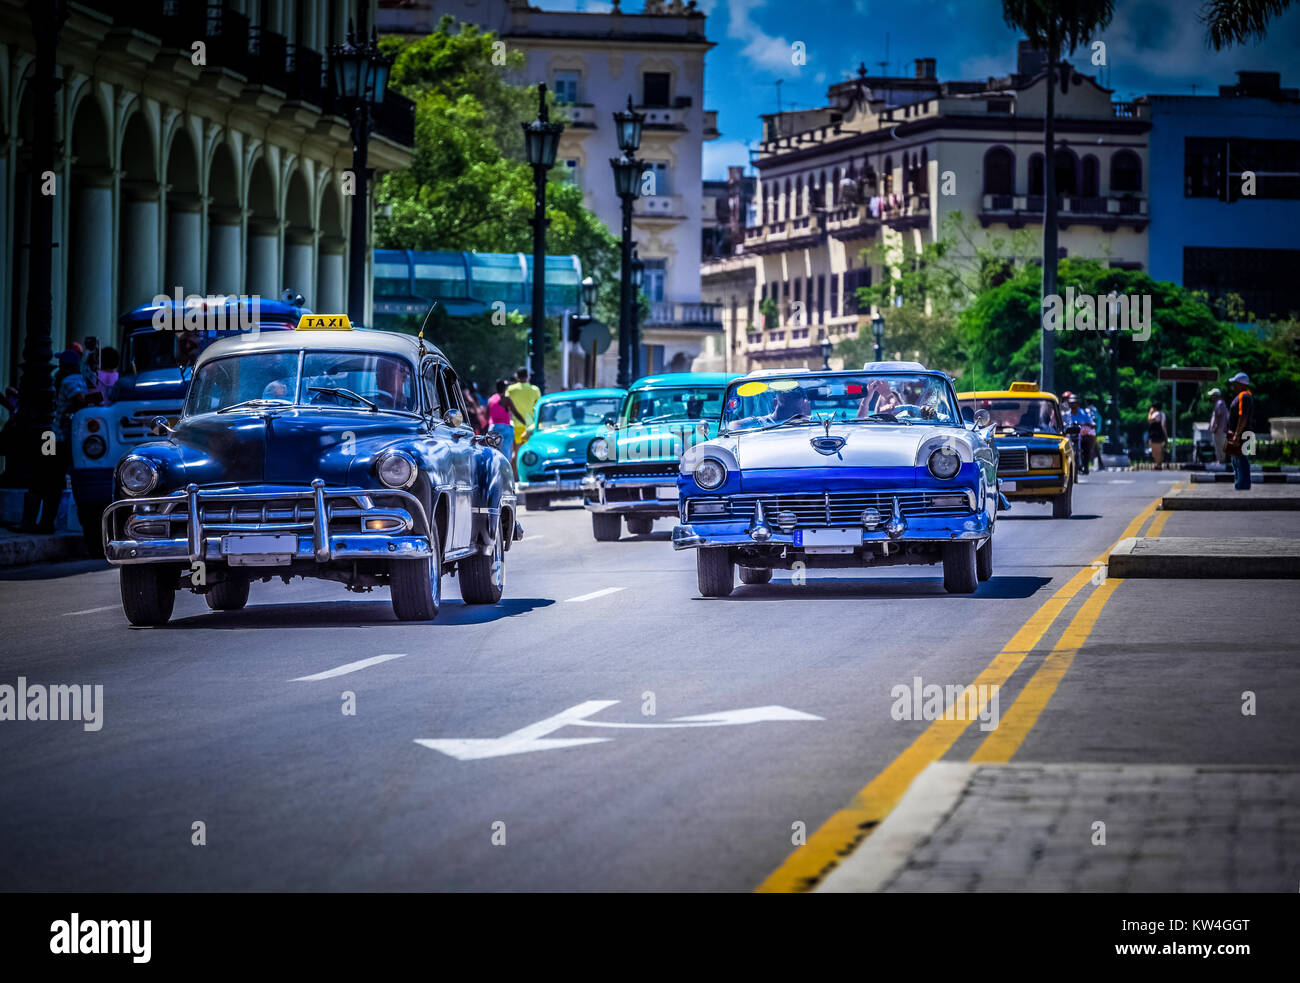 Kuba amerikanische Chevrolet und Ford Fairlane Oldtimer fahren auf der Hauptstrasse von Havanna City in Kuba - Serie Kuba Reportage Stock Photo